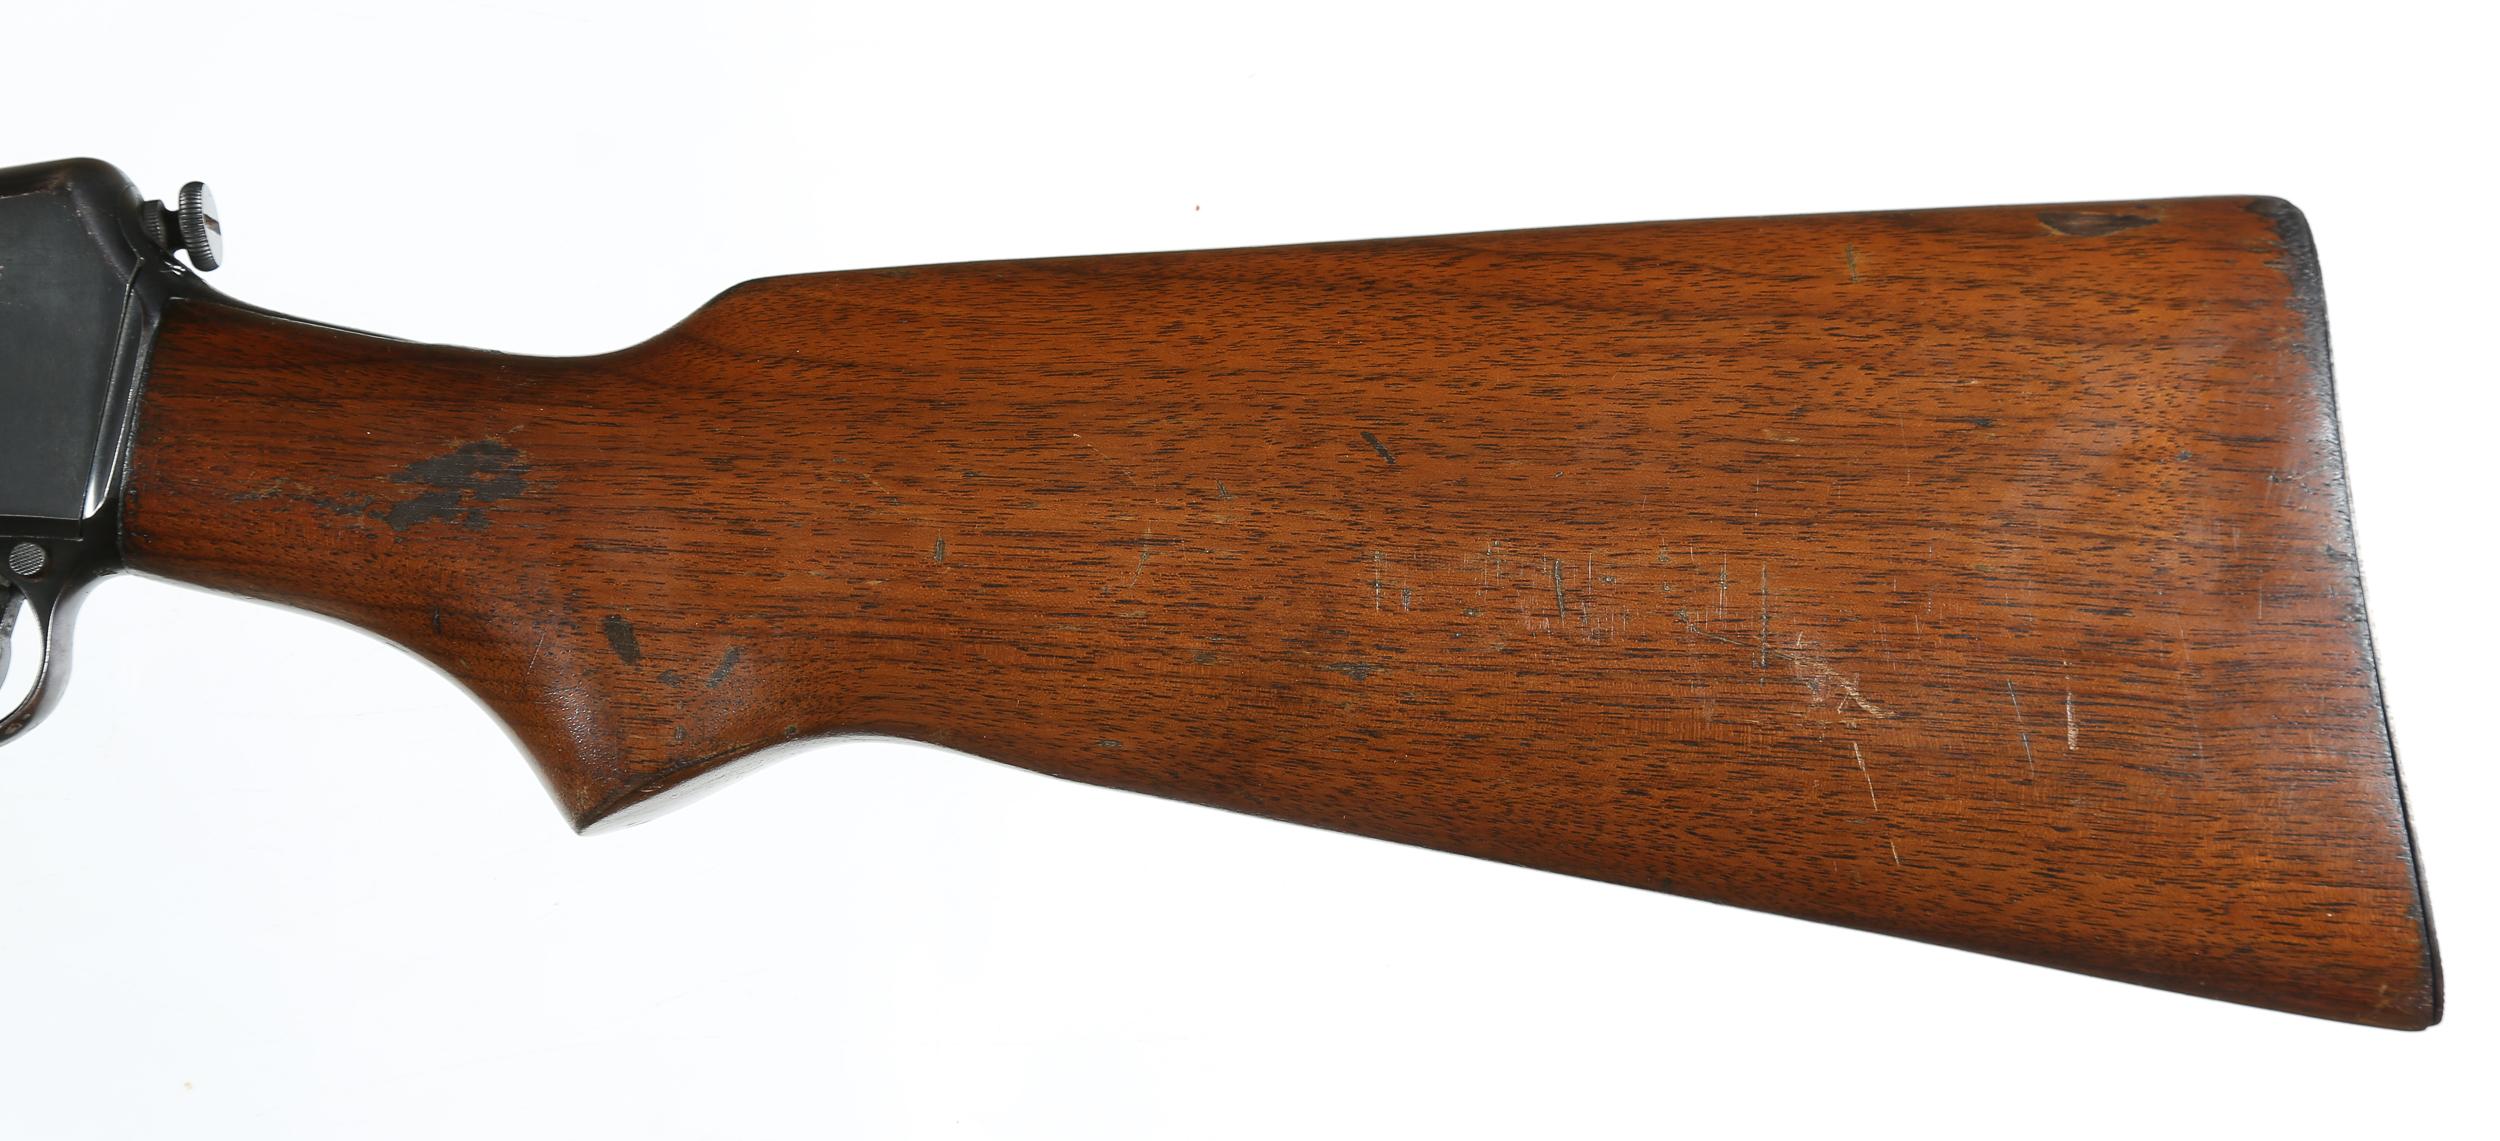 Winchester 63 Semi Rifle .22lr